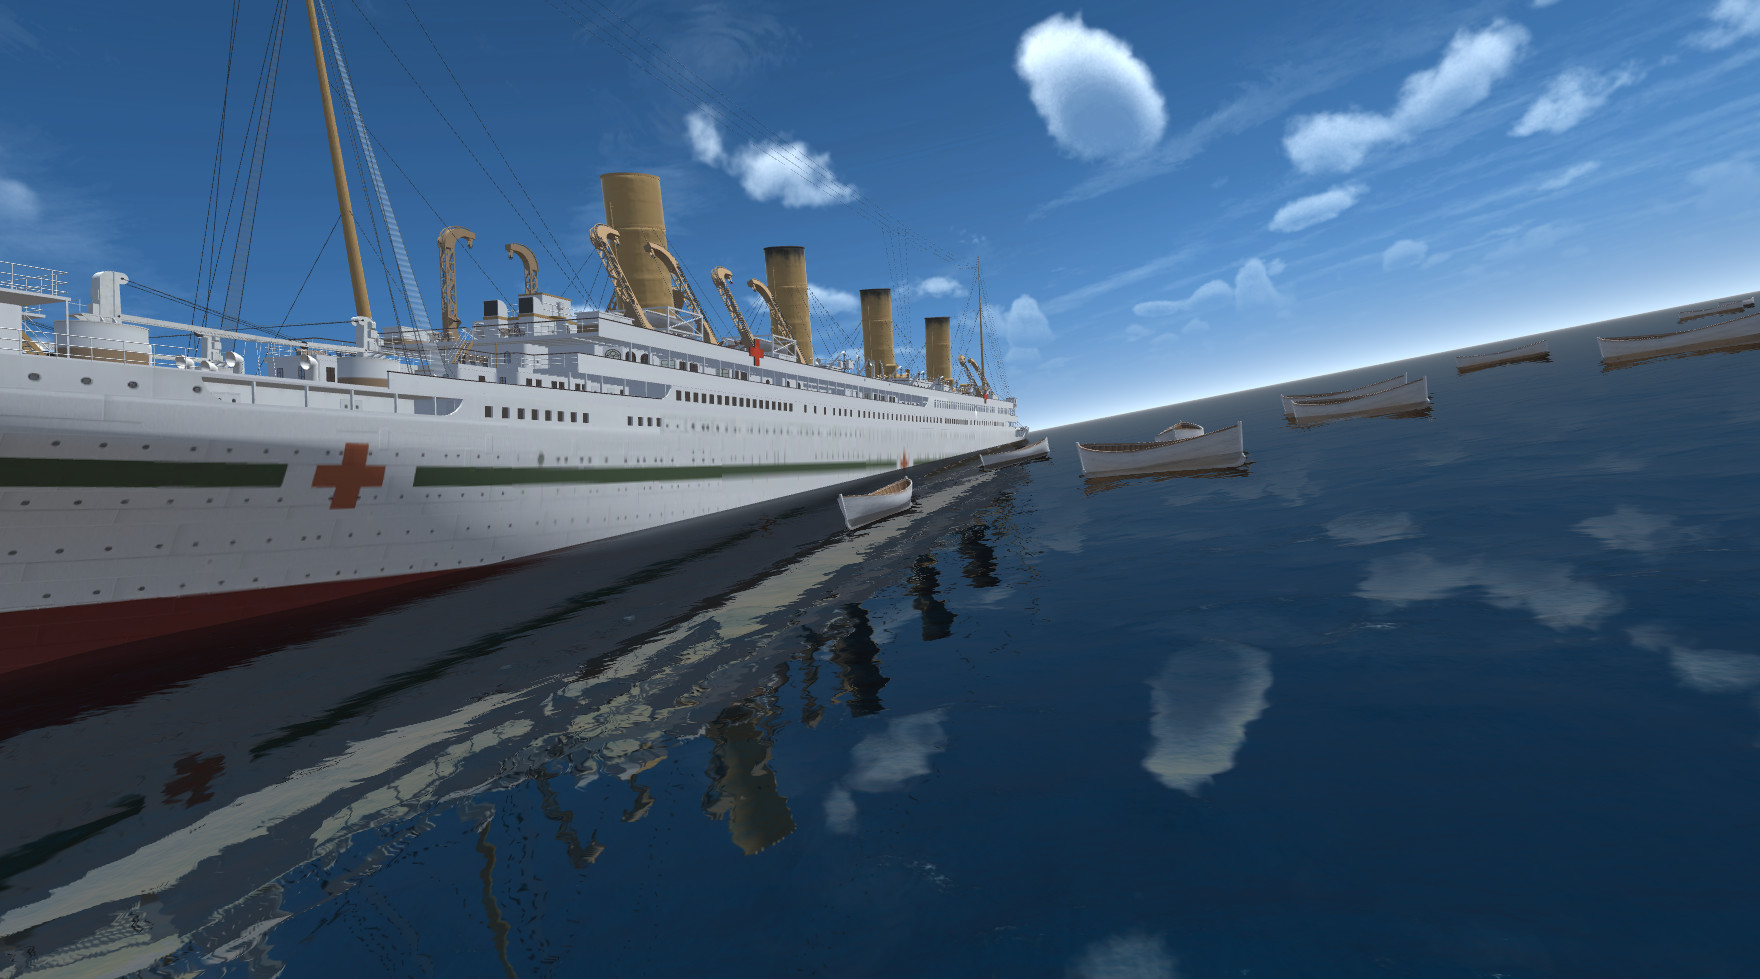 Britannic On Steam - britannic sinking roblox